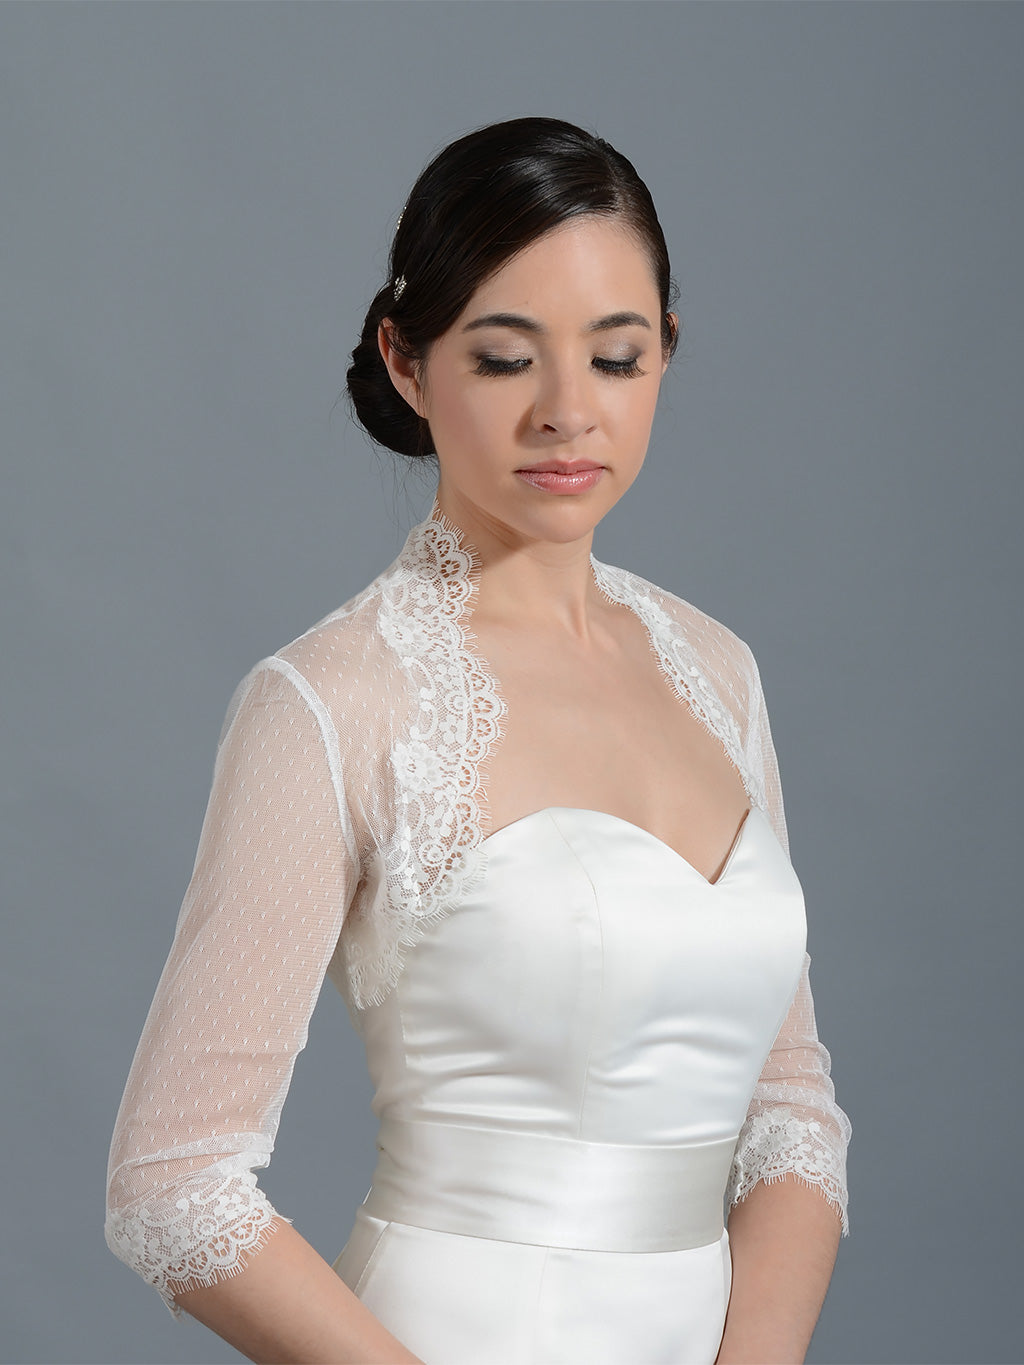 Lace Top 3/4 Sleeves Applique Wedding Jacket Ivory White Sequined Shrugs Bolero 